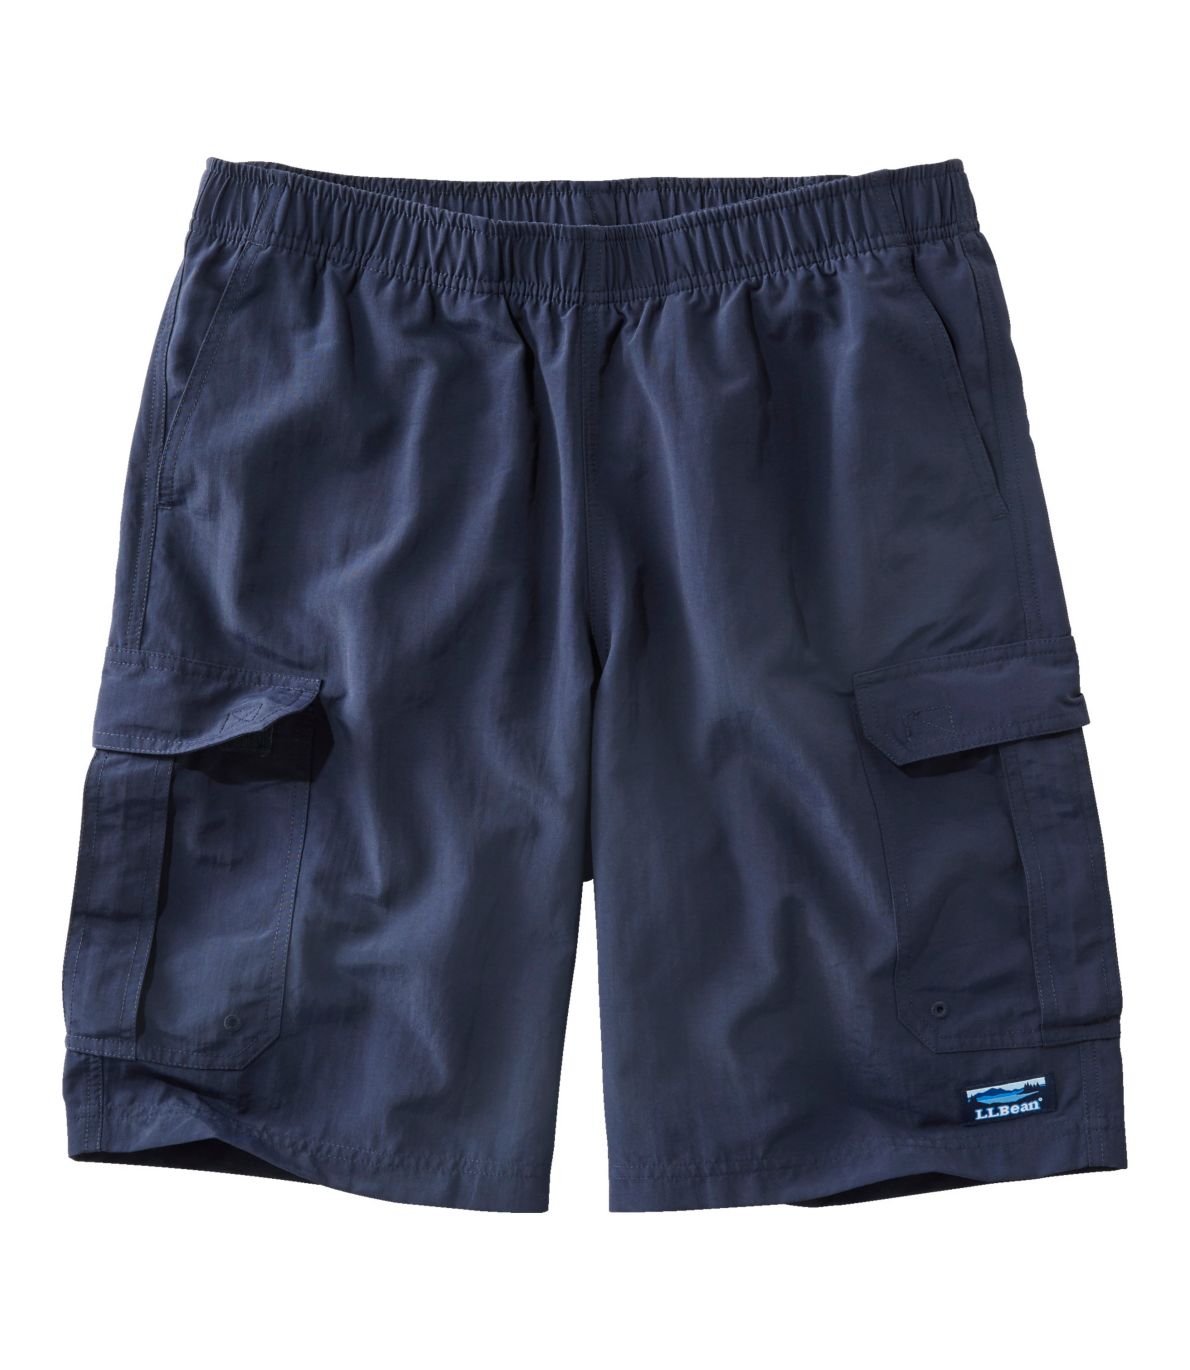 Men's Classic Supplex Sport Shorts, Cargo, 10"